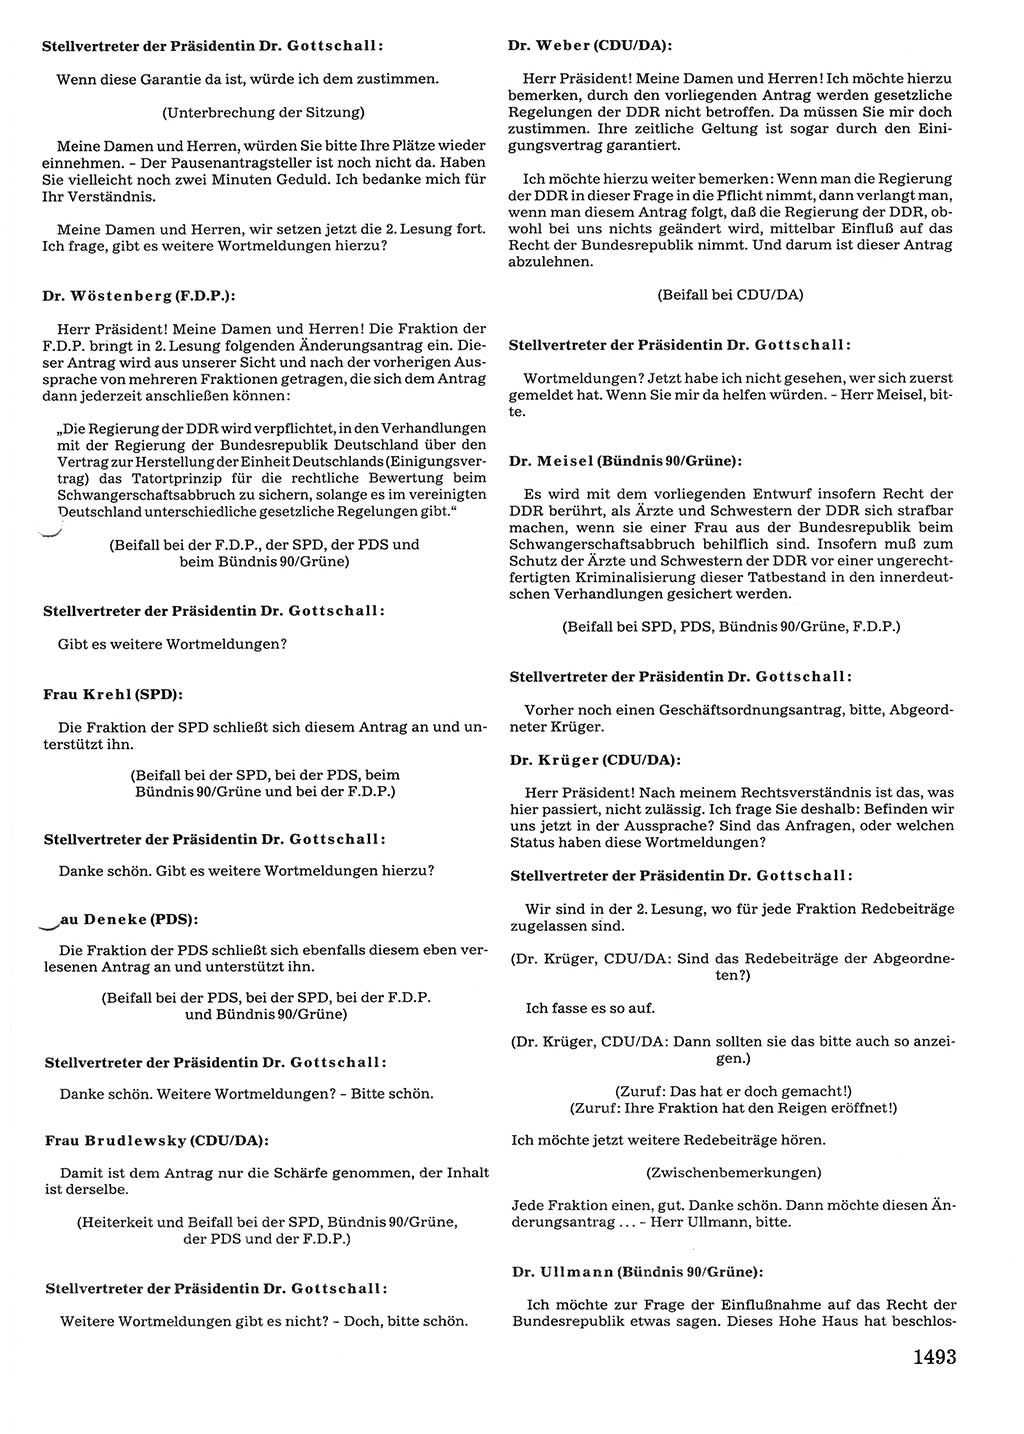 Tagungen der Volkskammer (VK) der Deutschen Demokratischen Republik (DDR), 10. Wahlperiode 1990, Seite 1493 (VK. DDR 10. WP. 1990, Prot. Tg. 1-38, 5.4.-2.10.1990, S. 1493)